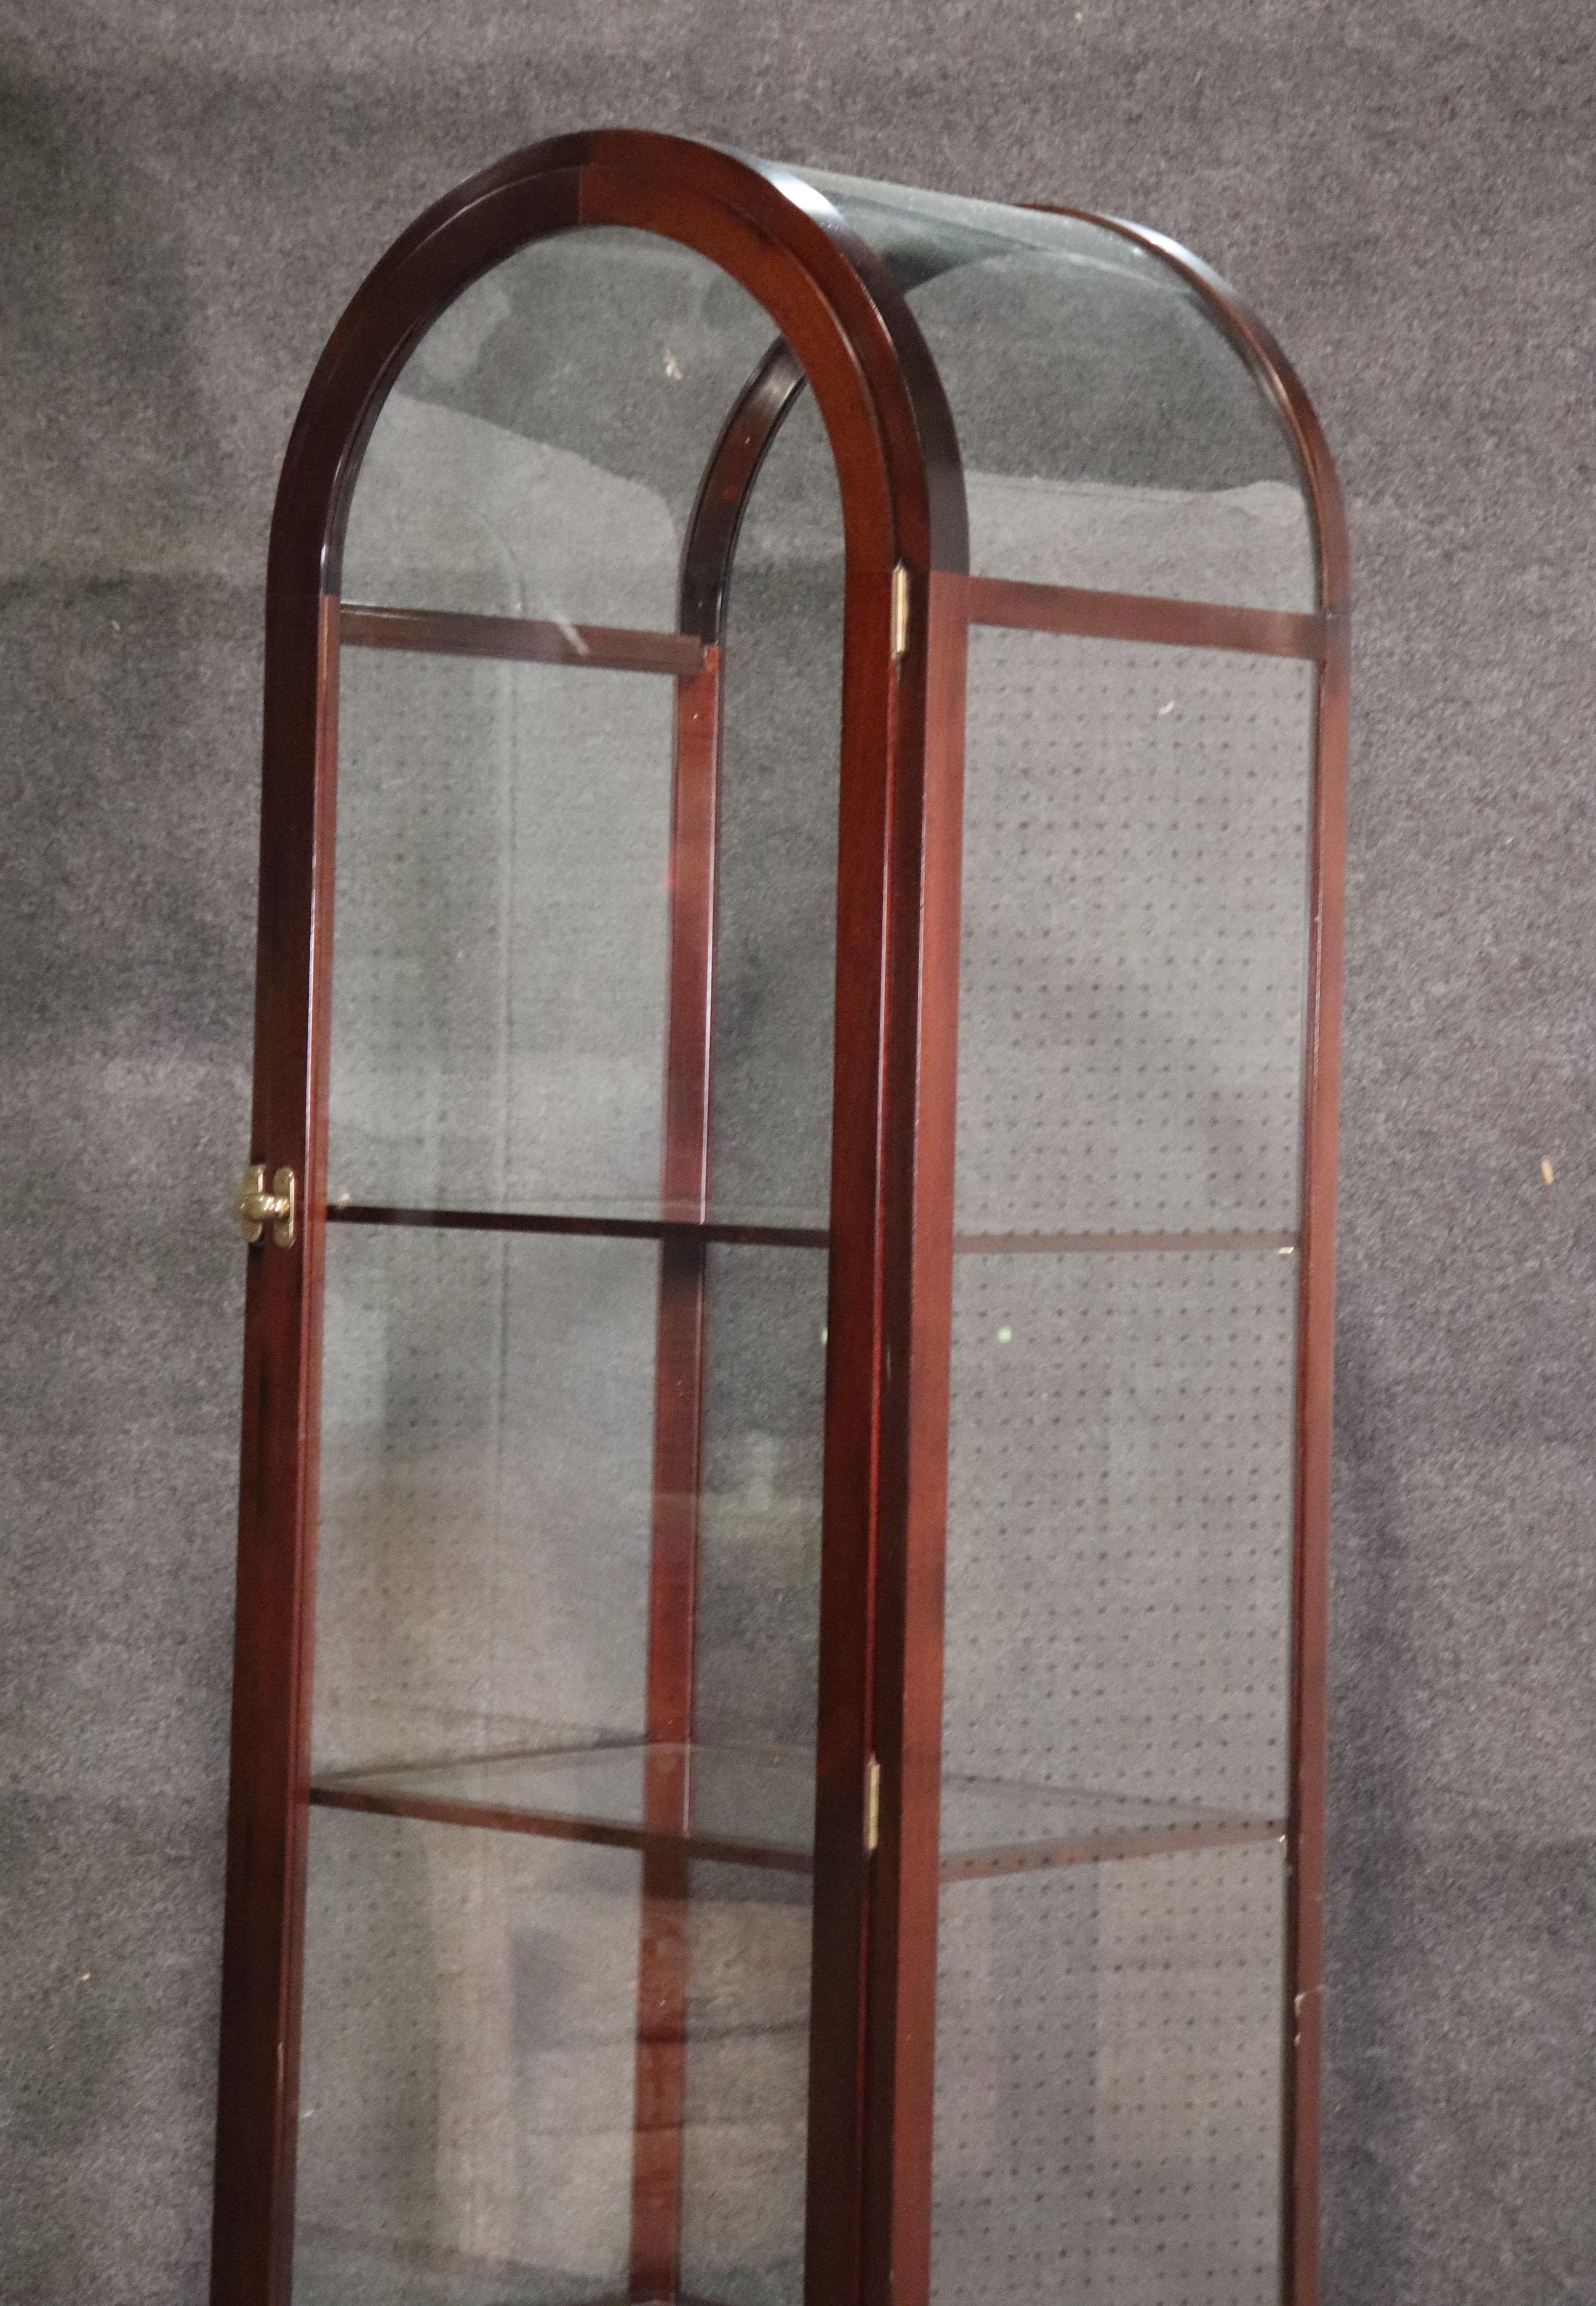 Hollywood Regency Pair of Mahogany Arched Narrow Glass Italian-Made Vitrine China Display Cabinets